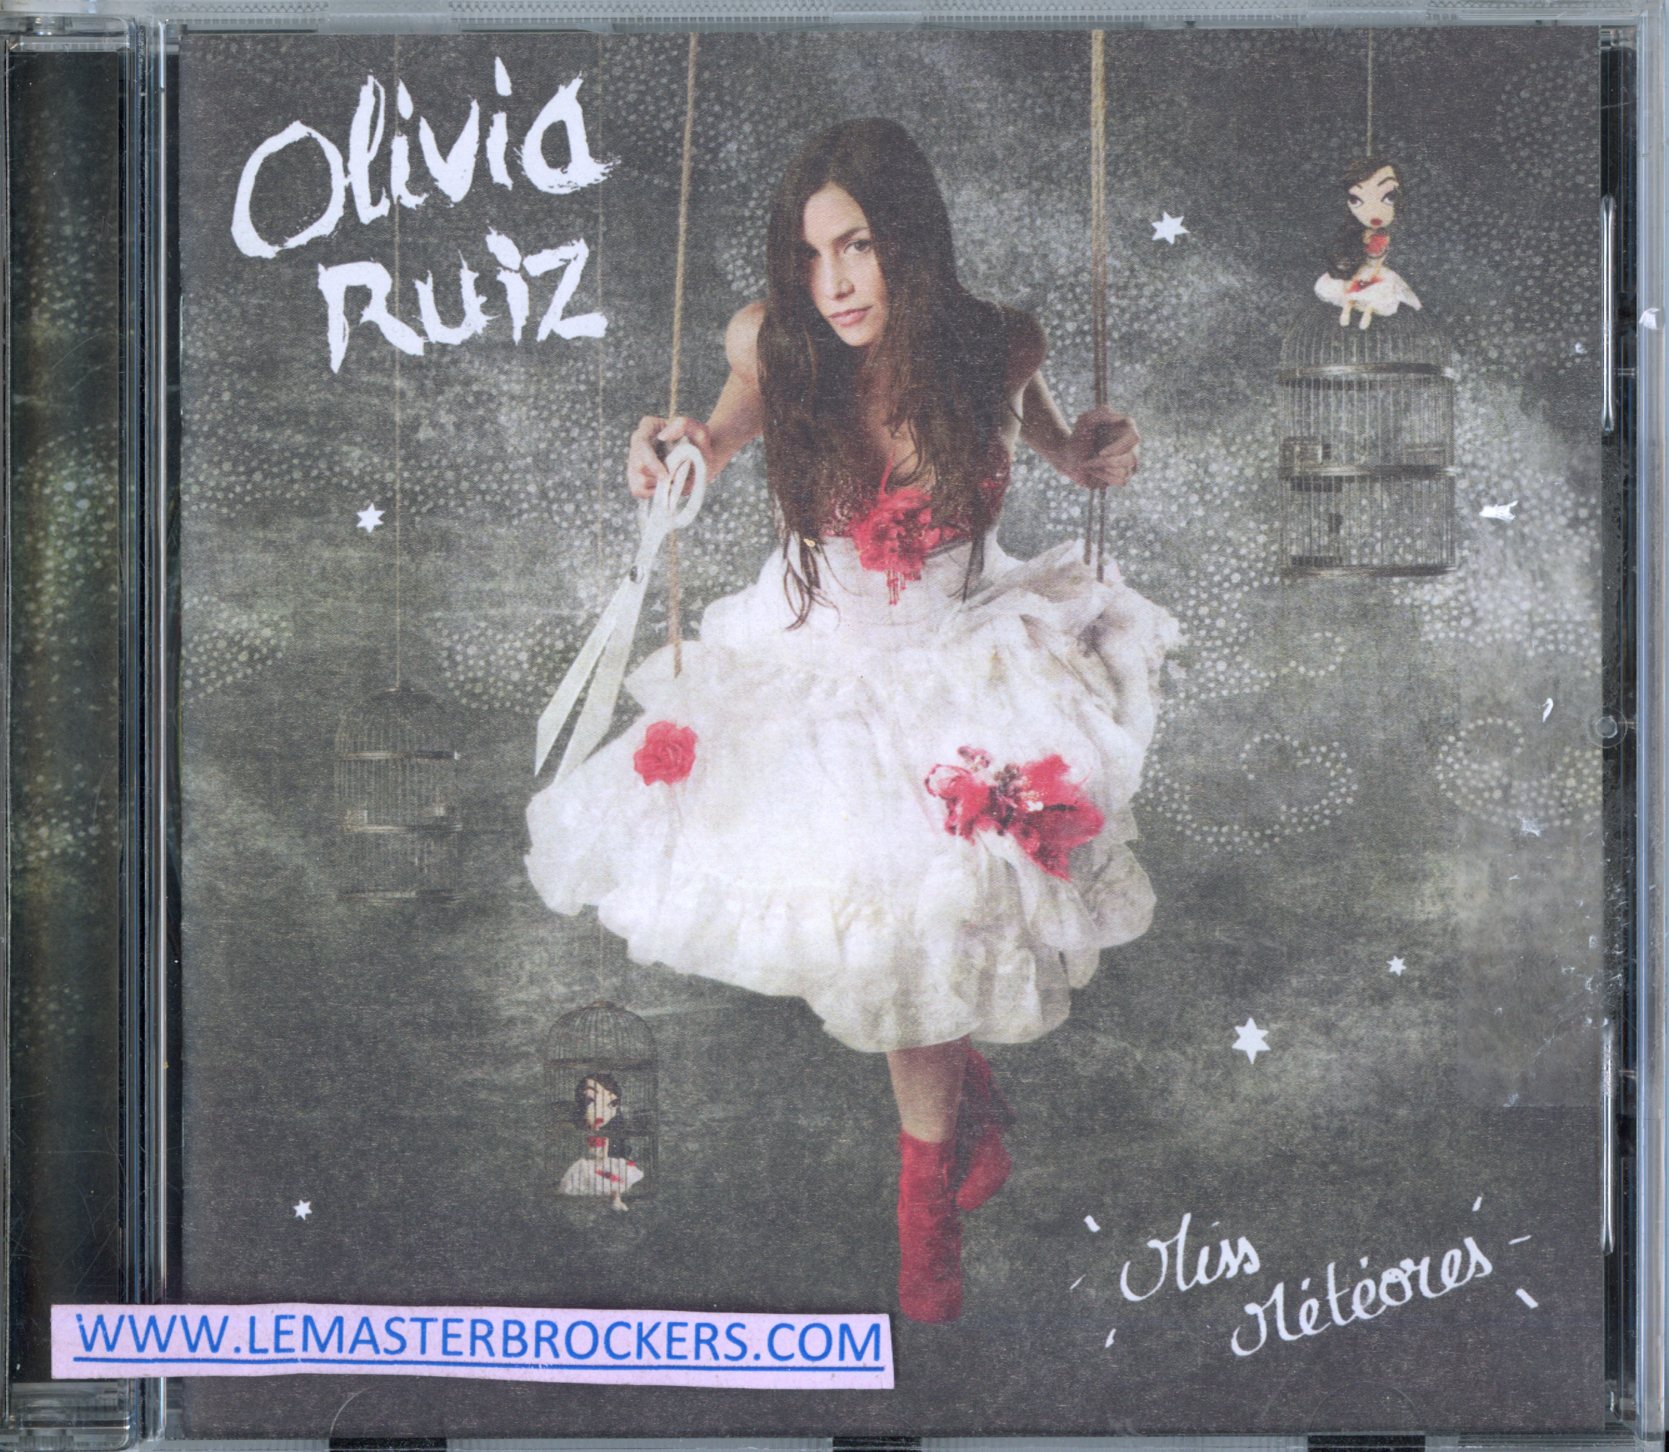 OLIVIA RUIZ MISS METEORES - CD ALBUM 2009 - 600753169278